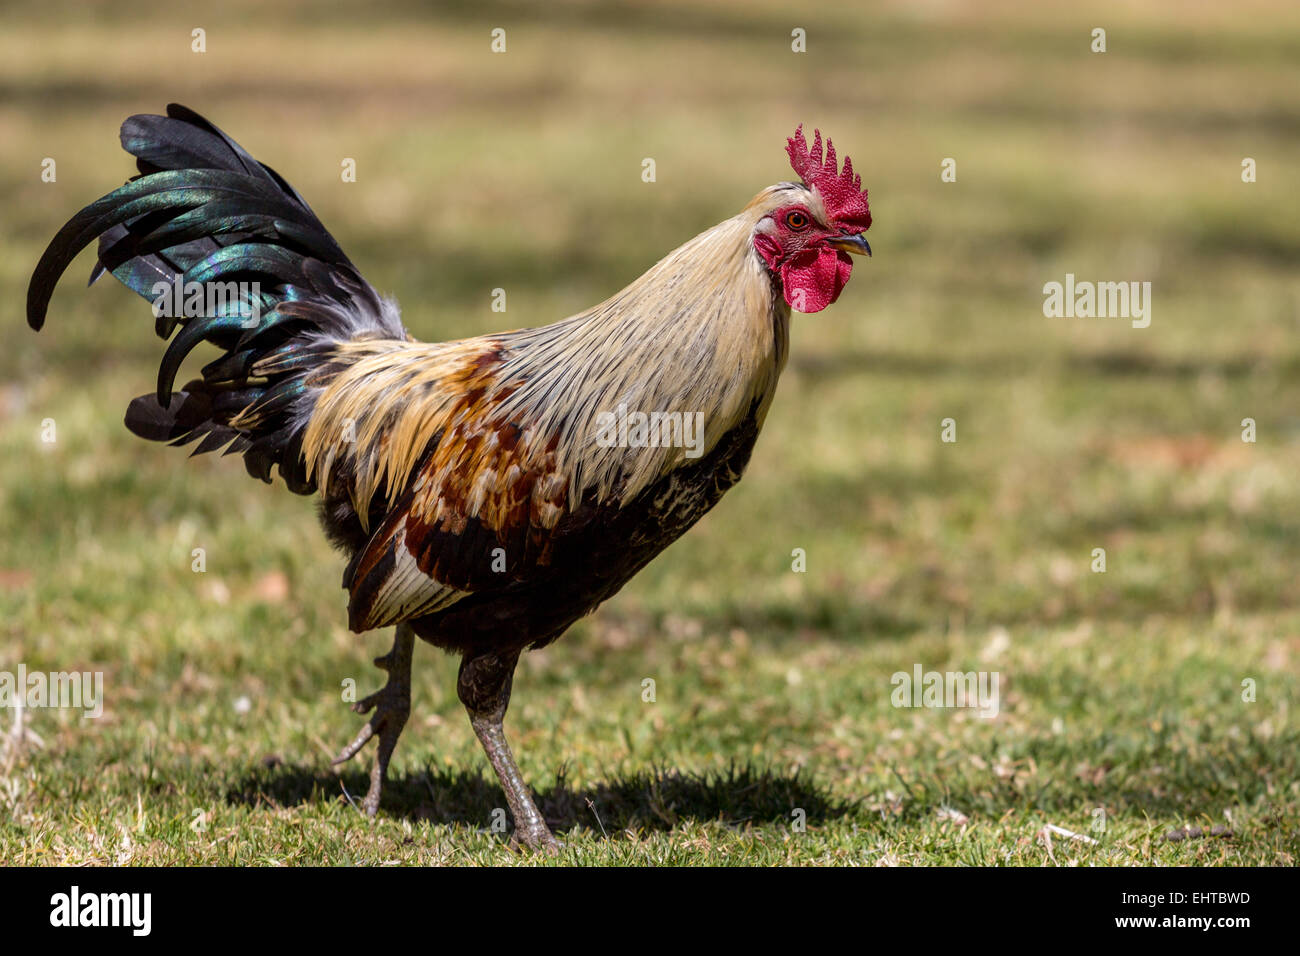 Paseando rooster Foto de stock